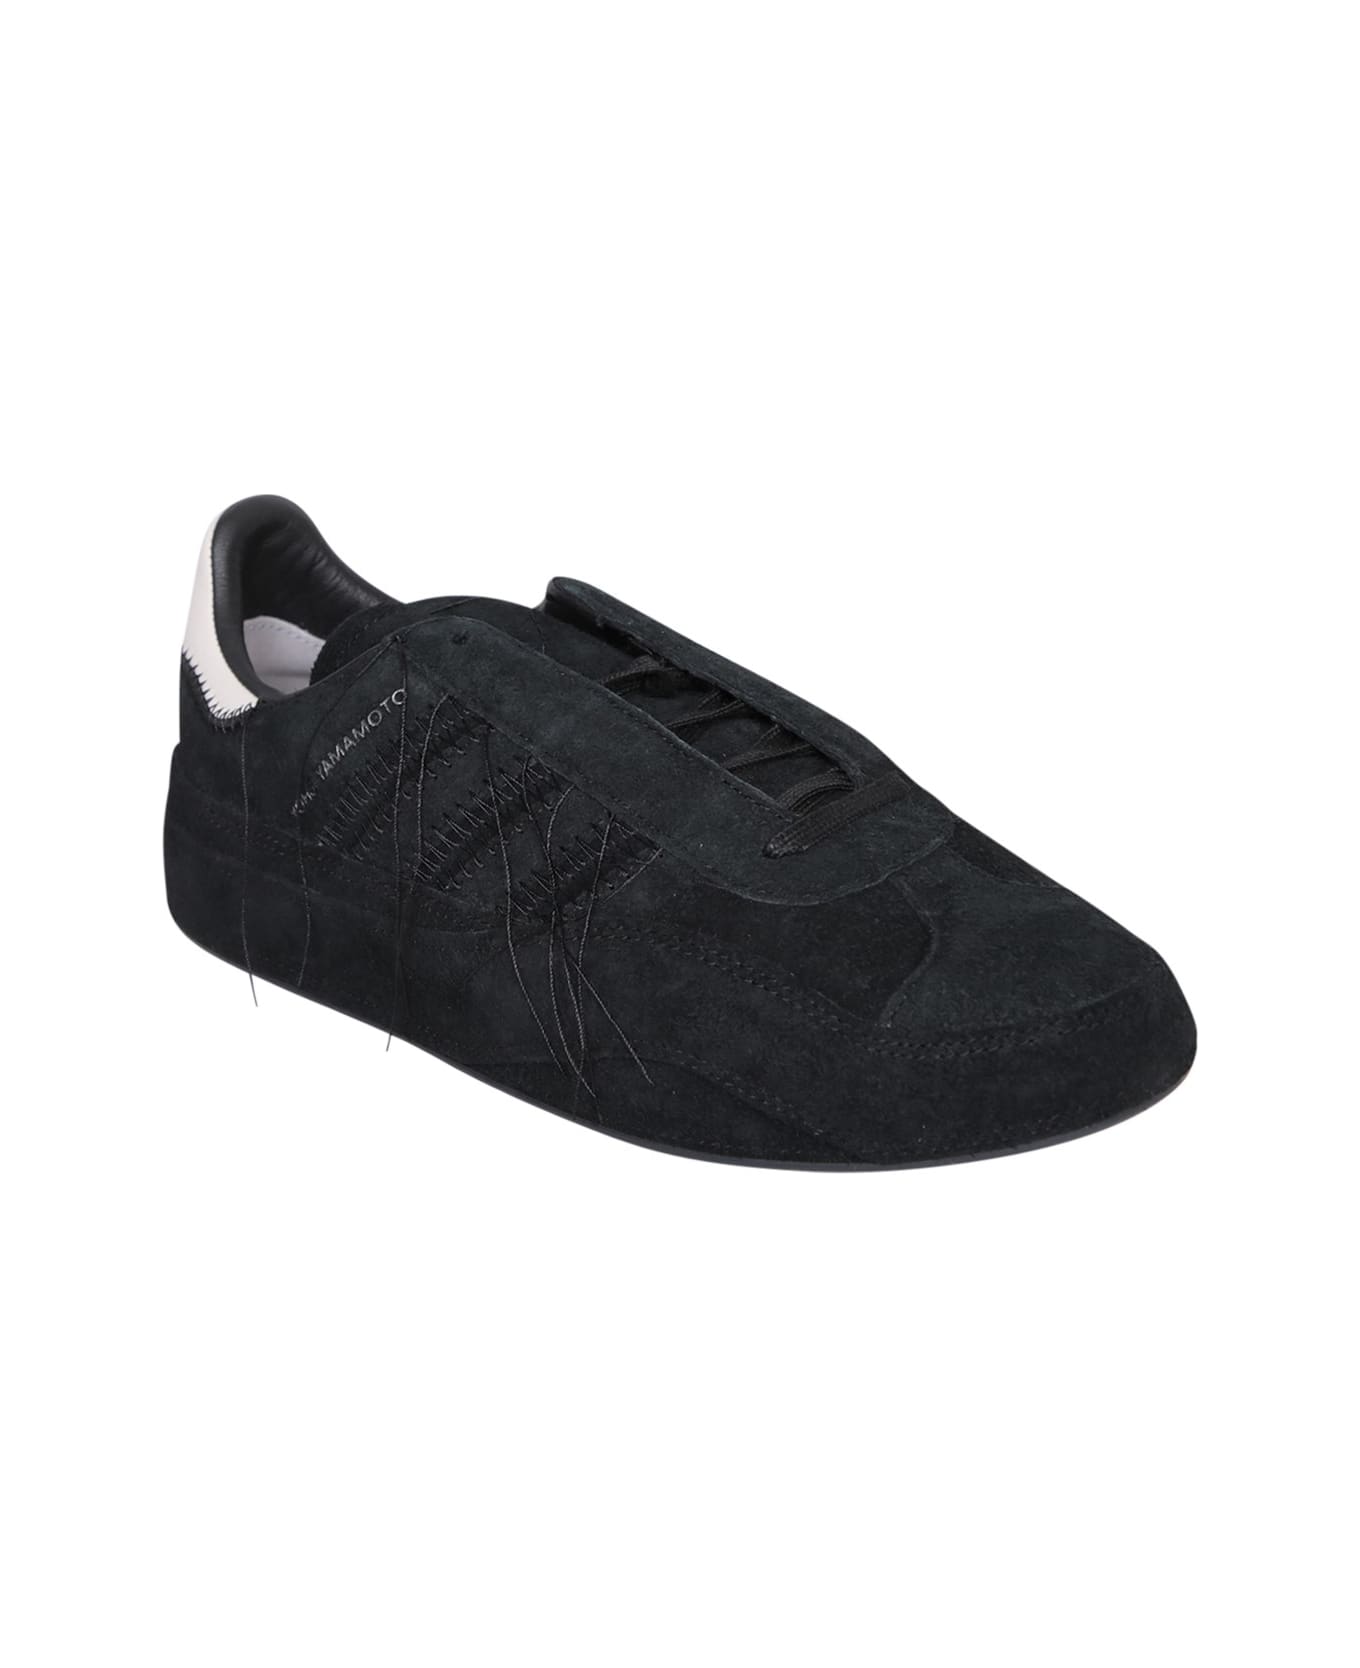 Y-3 Gazelle Black Sneakers - Black スニーカー